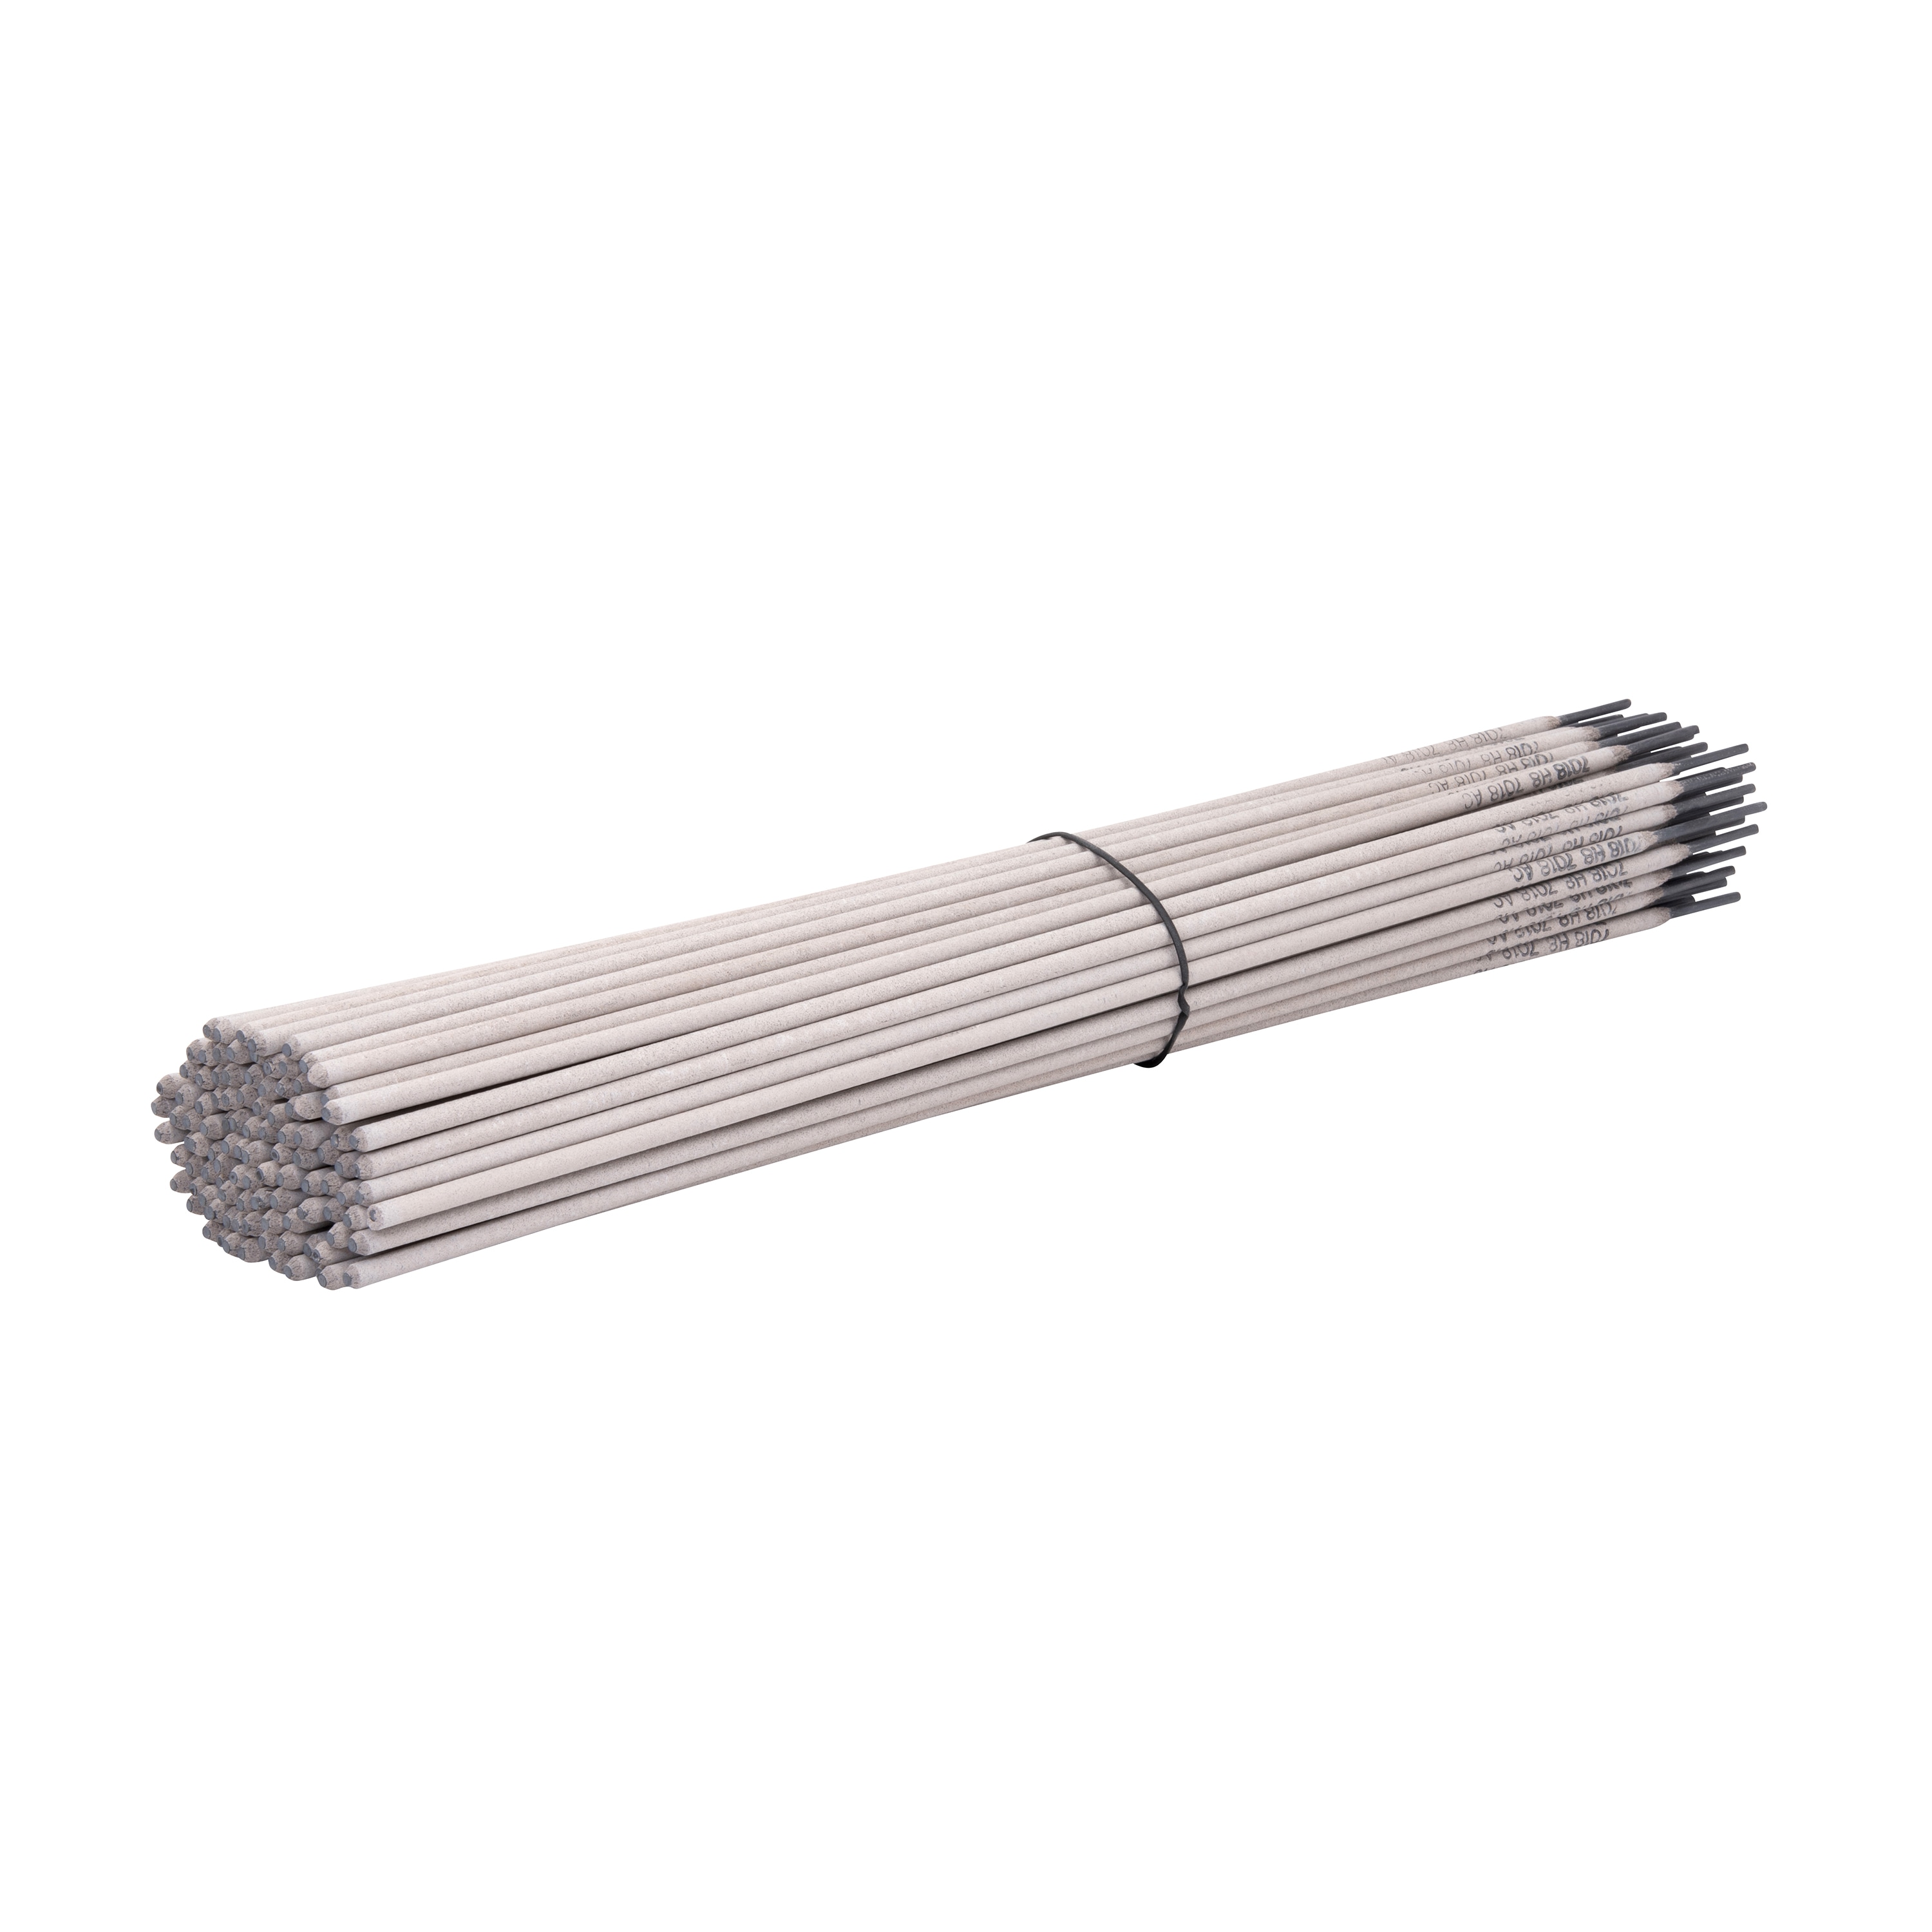 4 lb E7018 3/32-1/8-5/32 Stick electrodes welding rod 2 lb 3/32 4-lb 